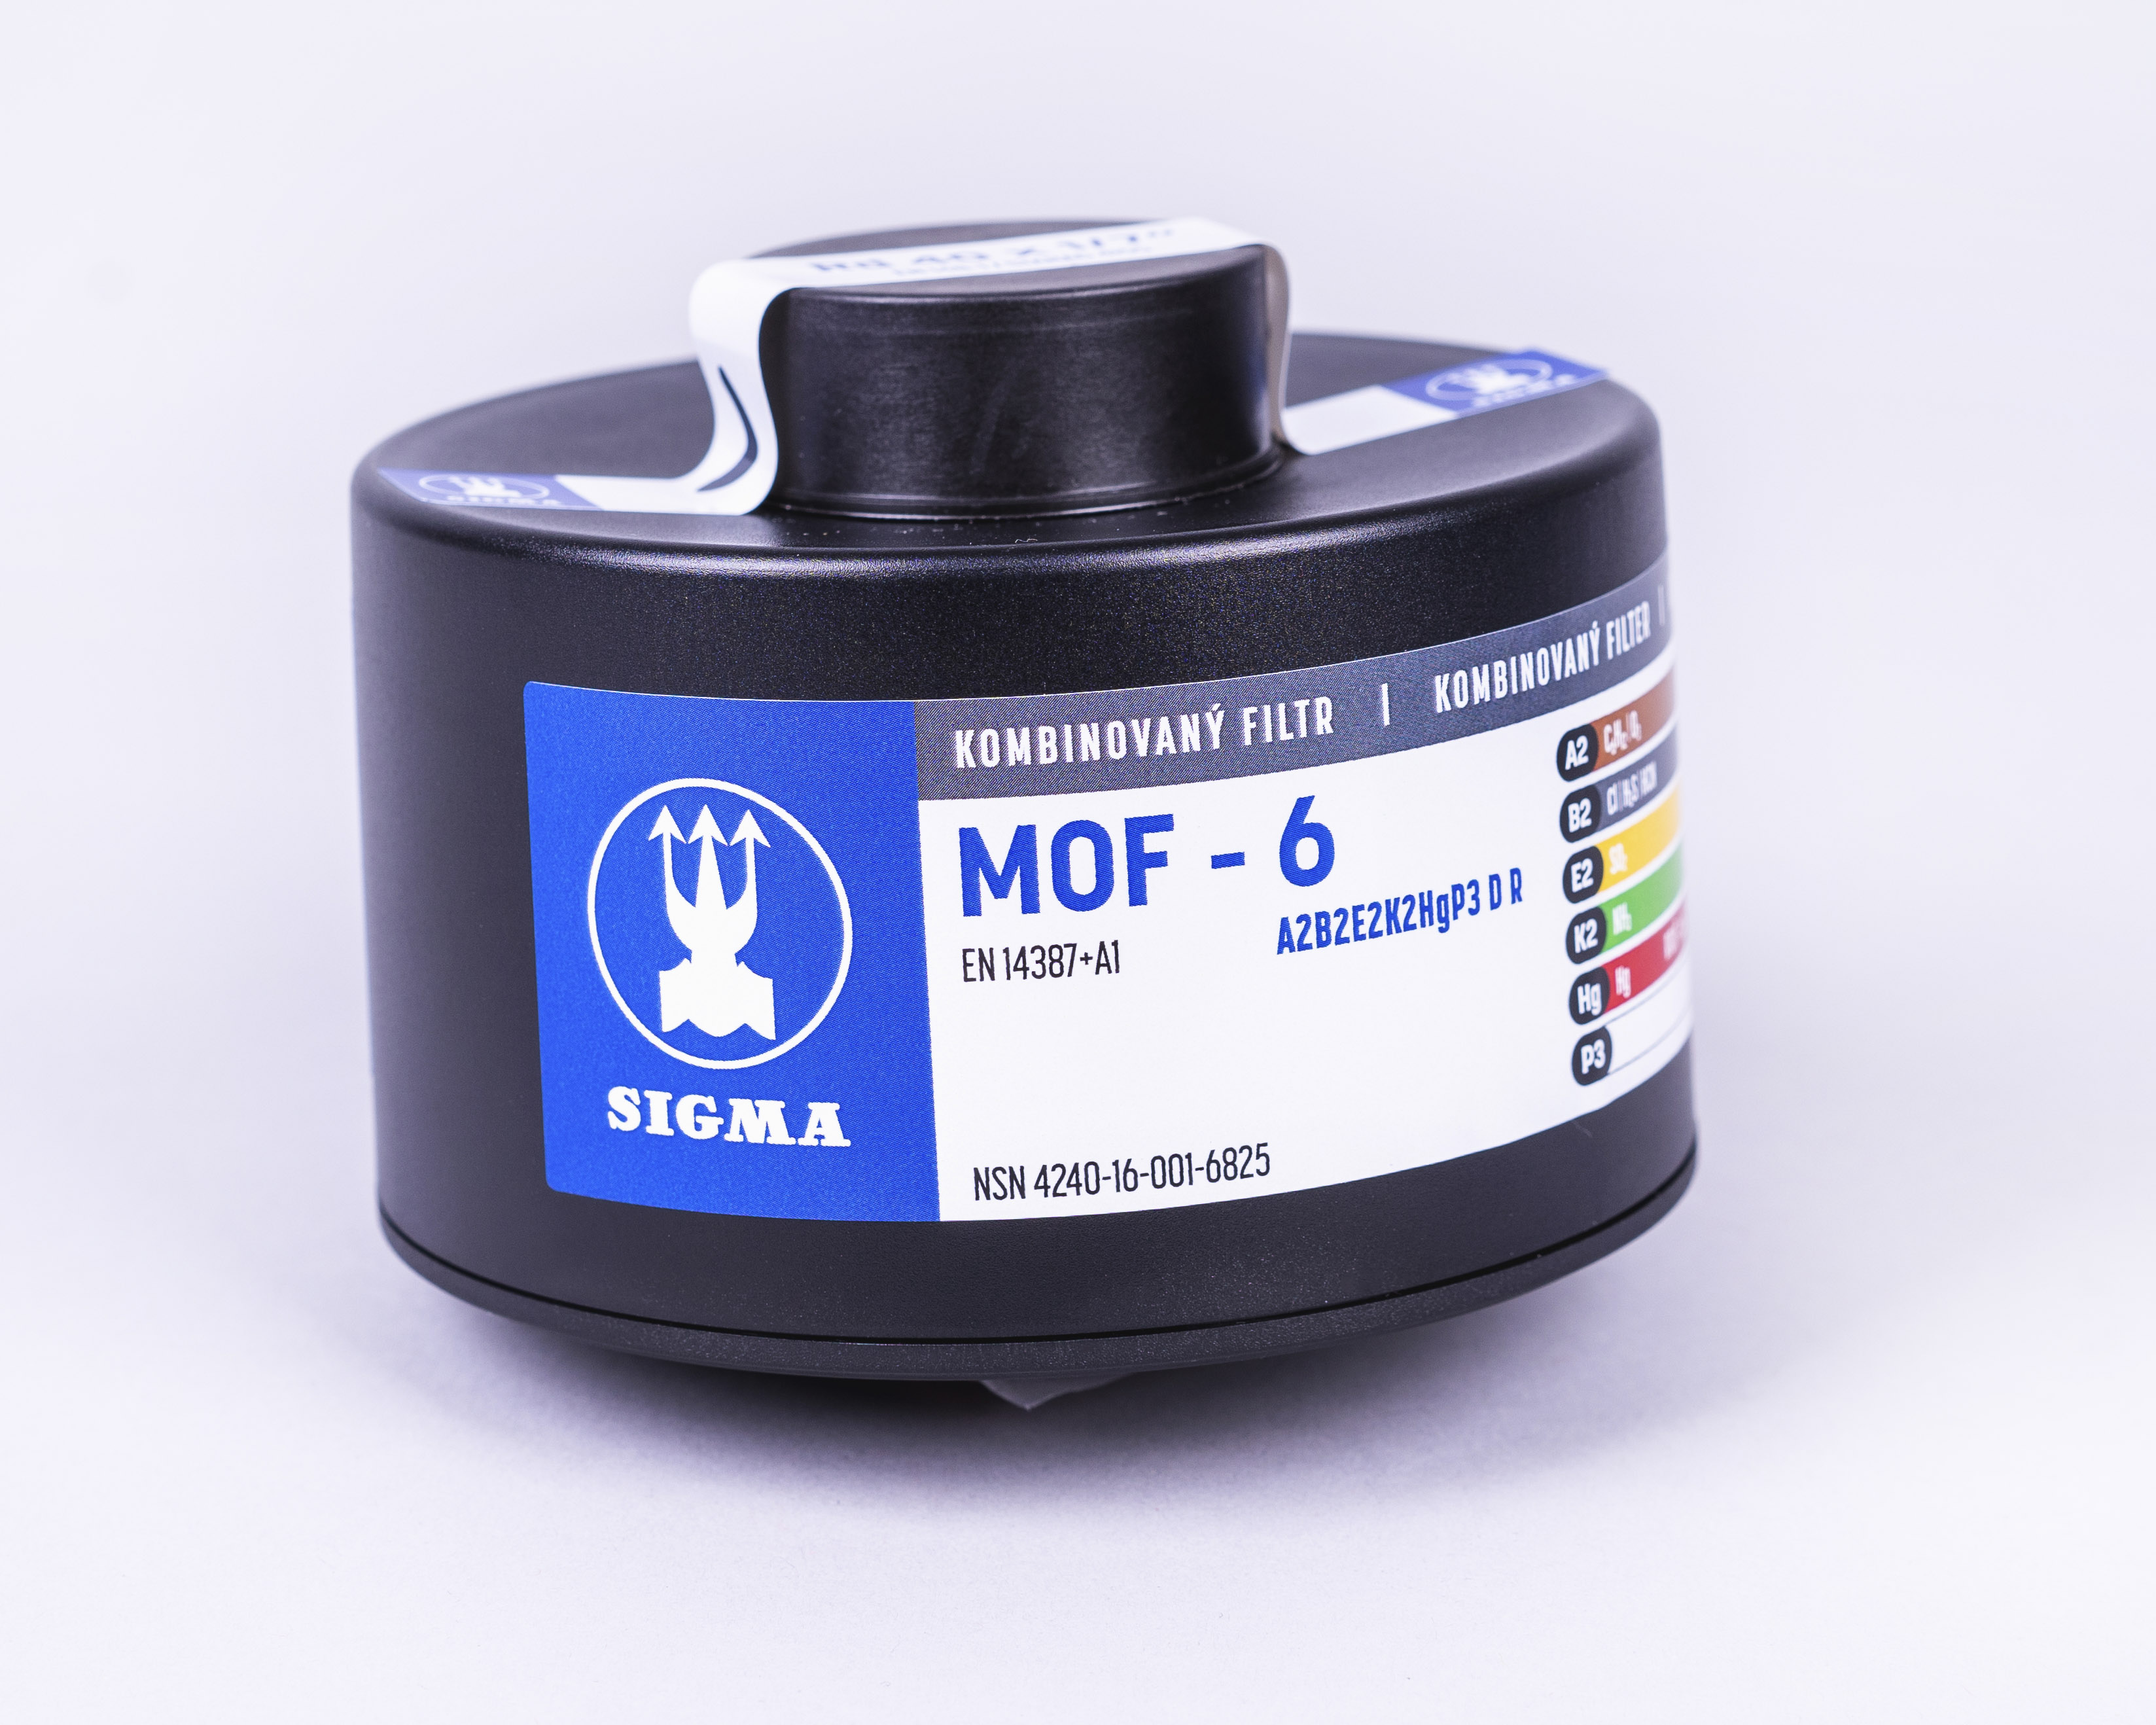 Filtr kombinovaný MOF-6 - A2B2E2K2HgP3 D R